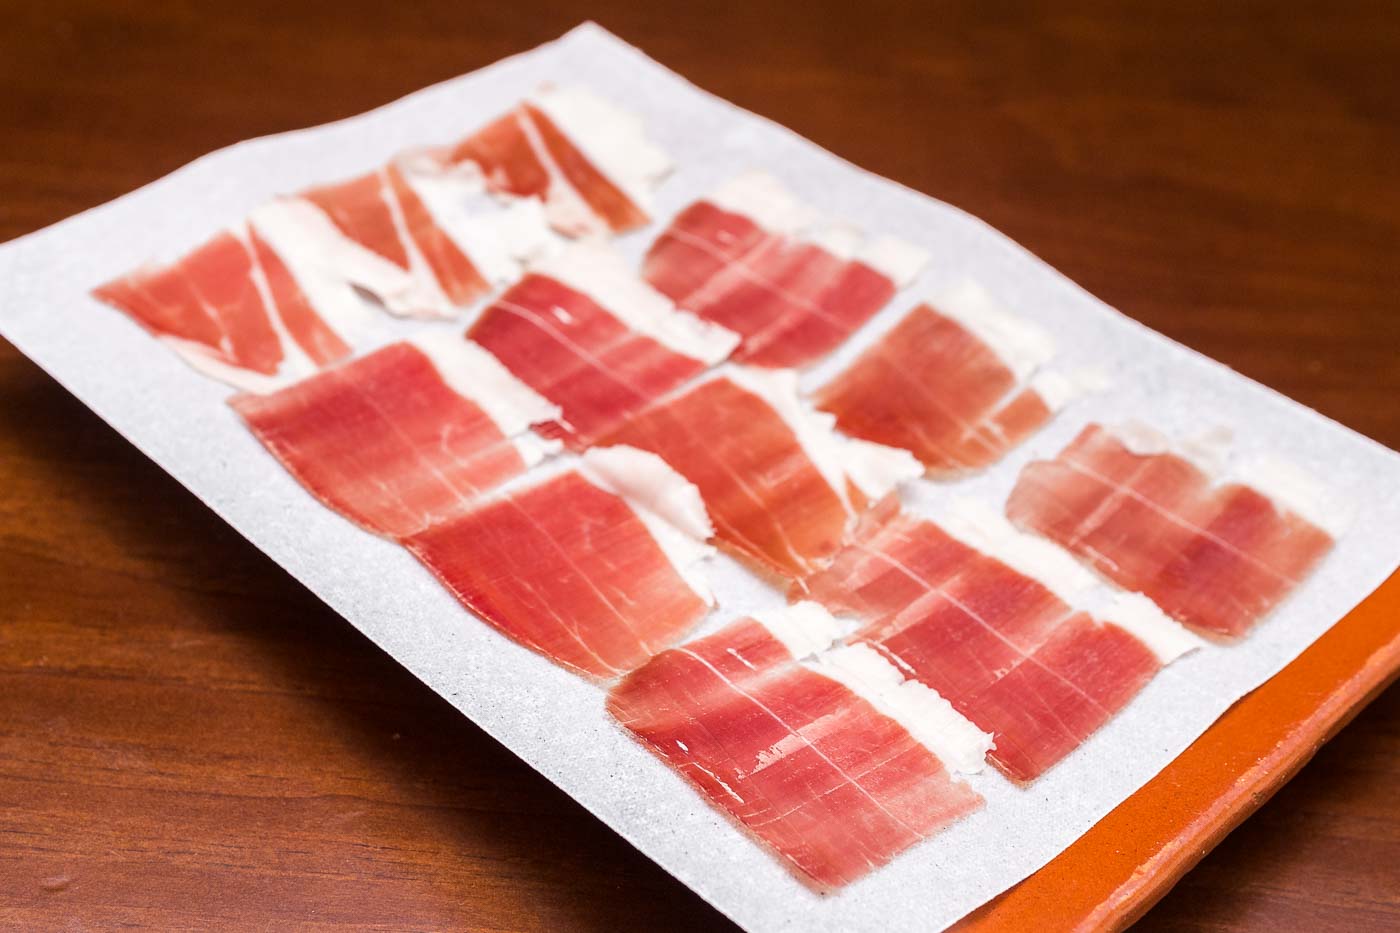 Iberian ham (50g / 120g)